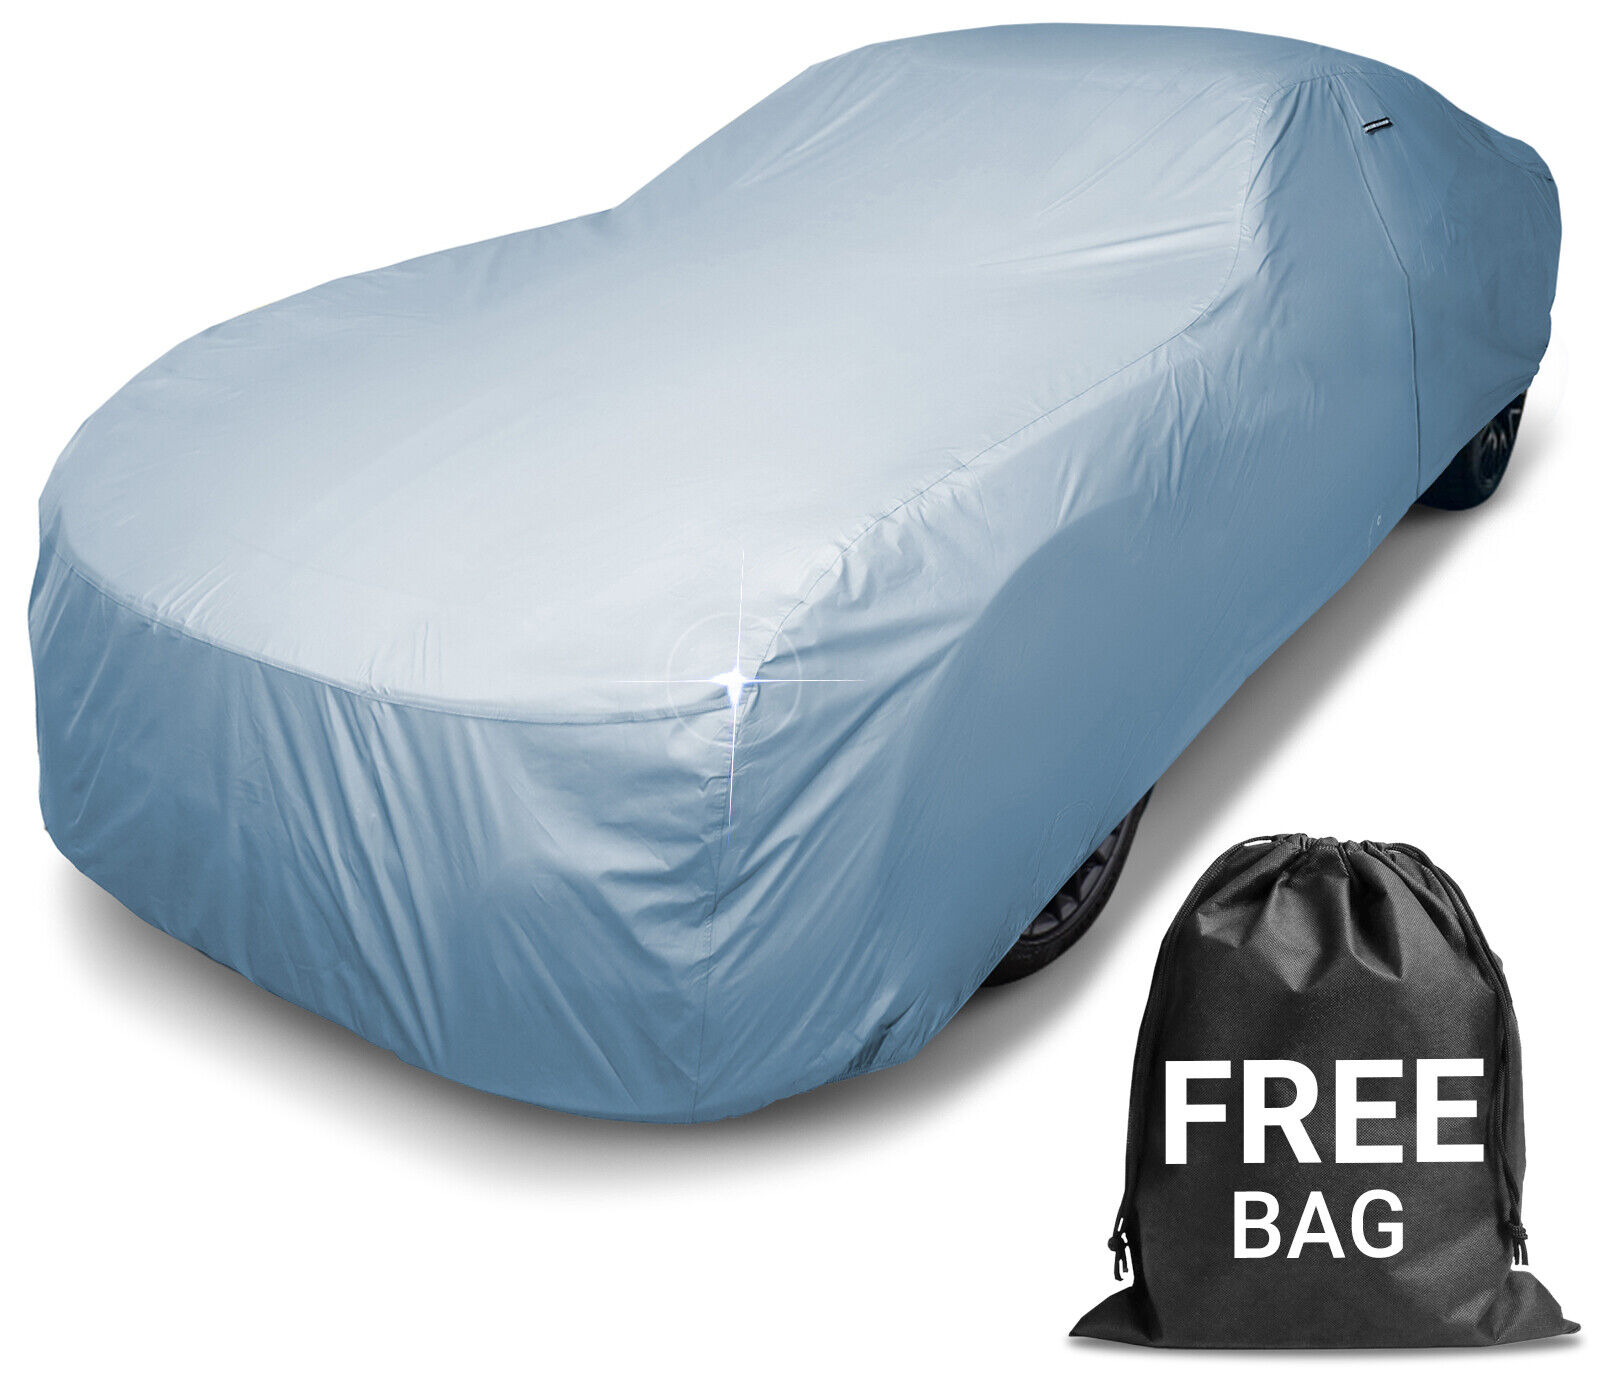 For BENTLEY [BROOKLANDS] Premium Custom-Fit Outdoor Waterproof Car Cover